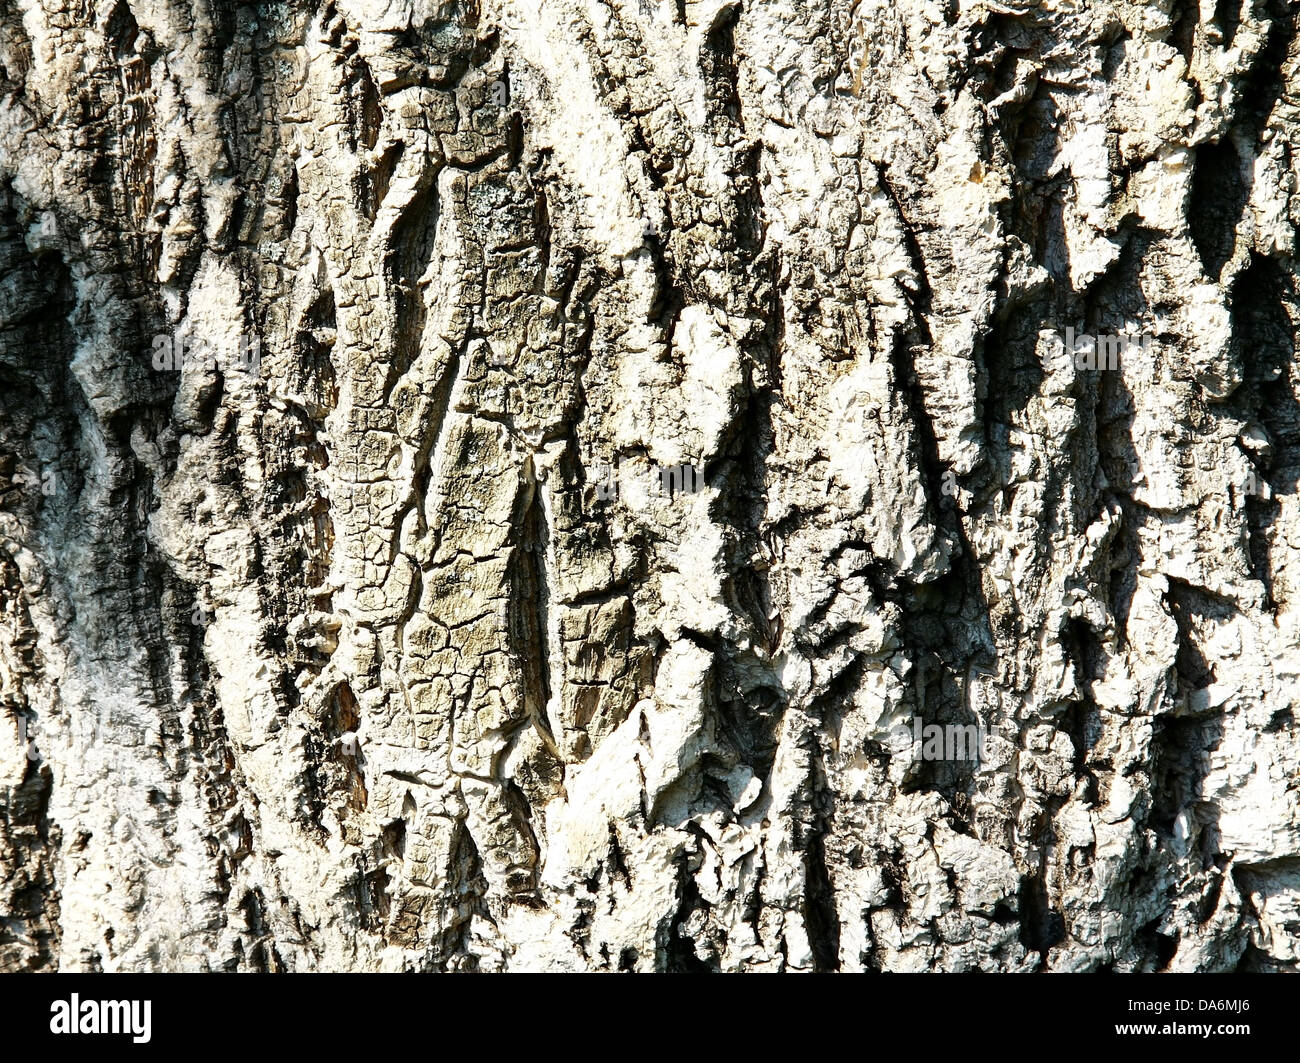 Sunny bark of cork tree abstract background Stock Photo